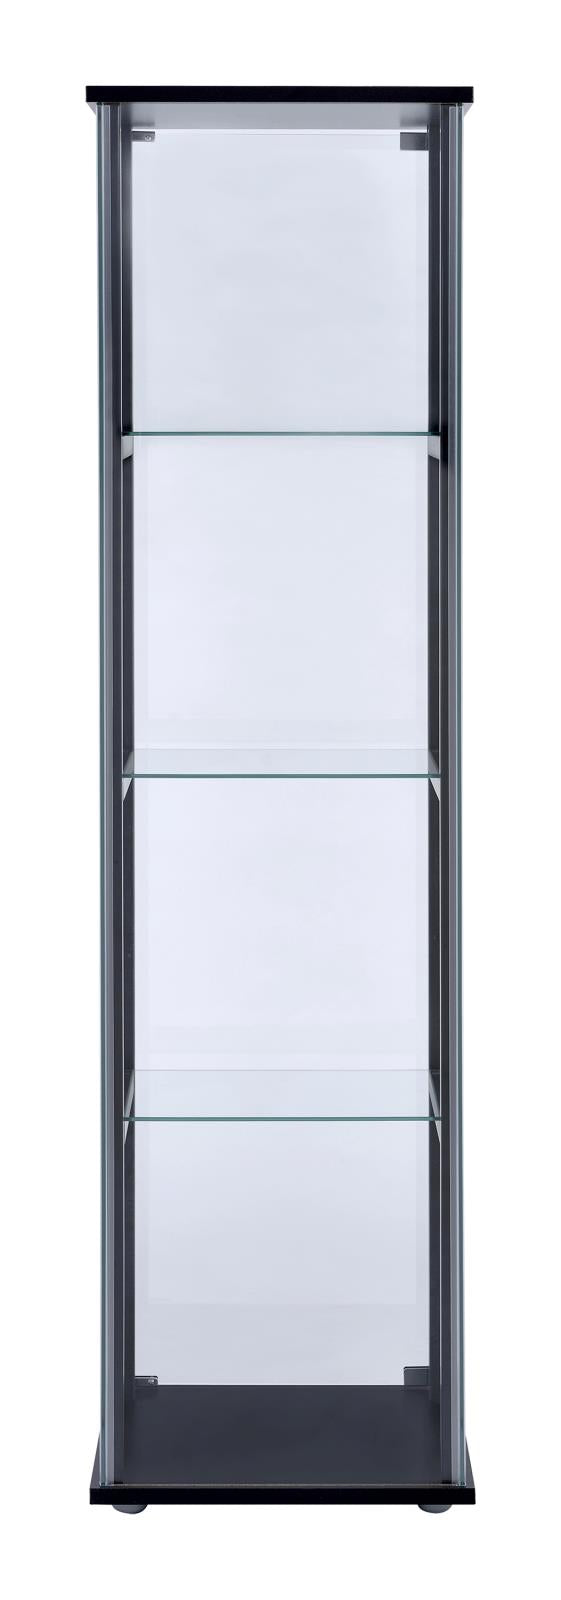 Cyclamen Black/Clear 4-Shelf Glass Curio Cabinet - 950171 - Bien Home Furniture &amp; Electronics